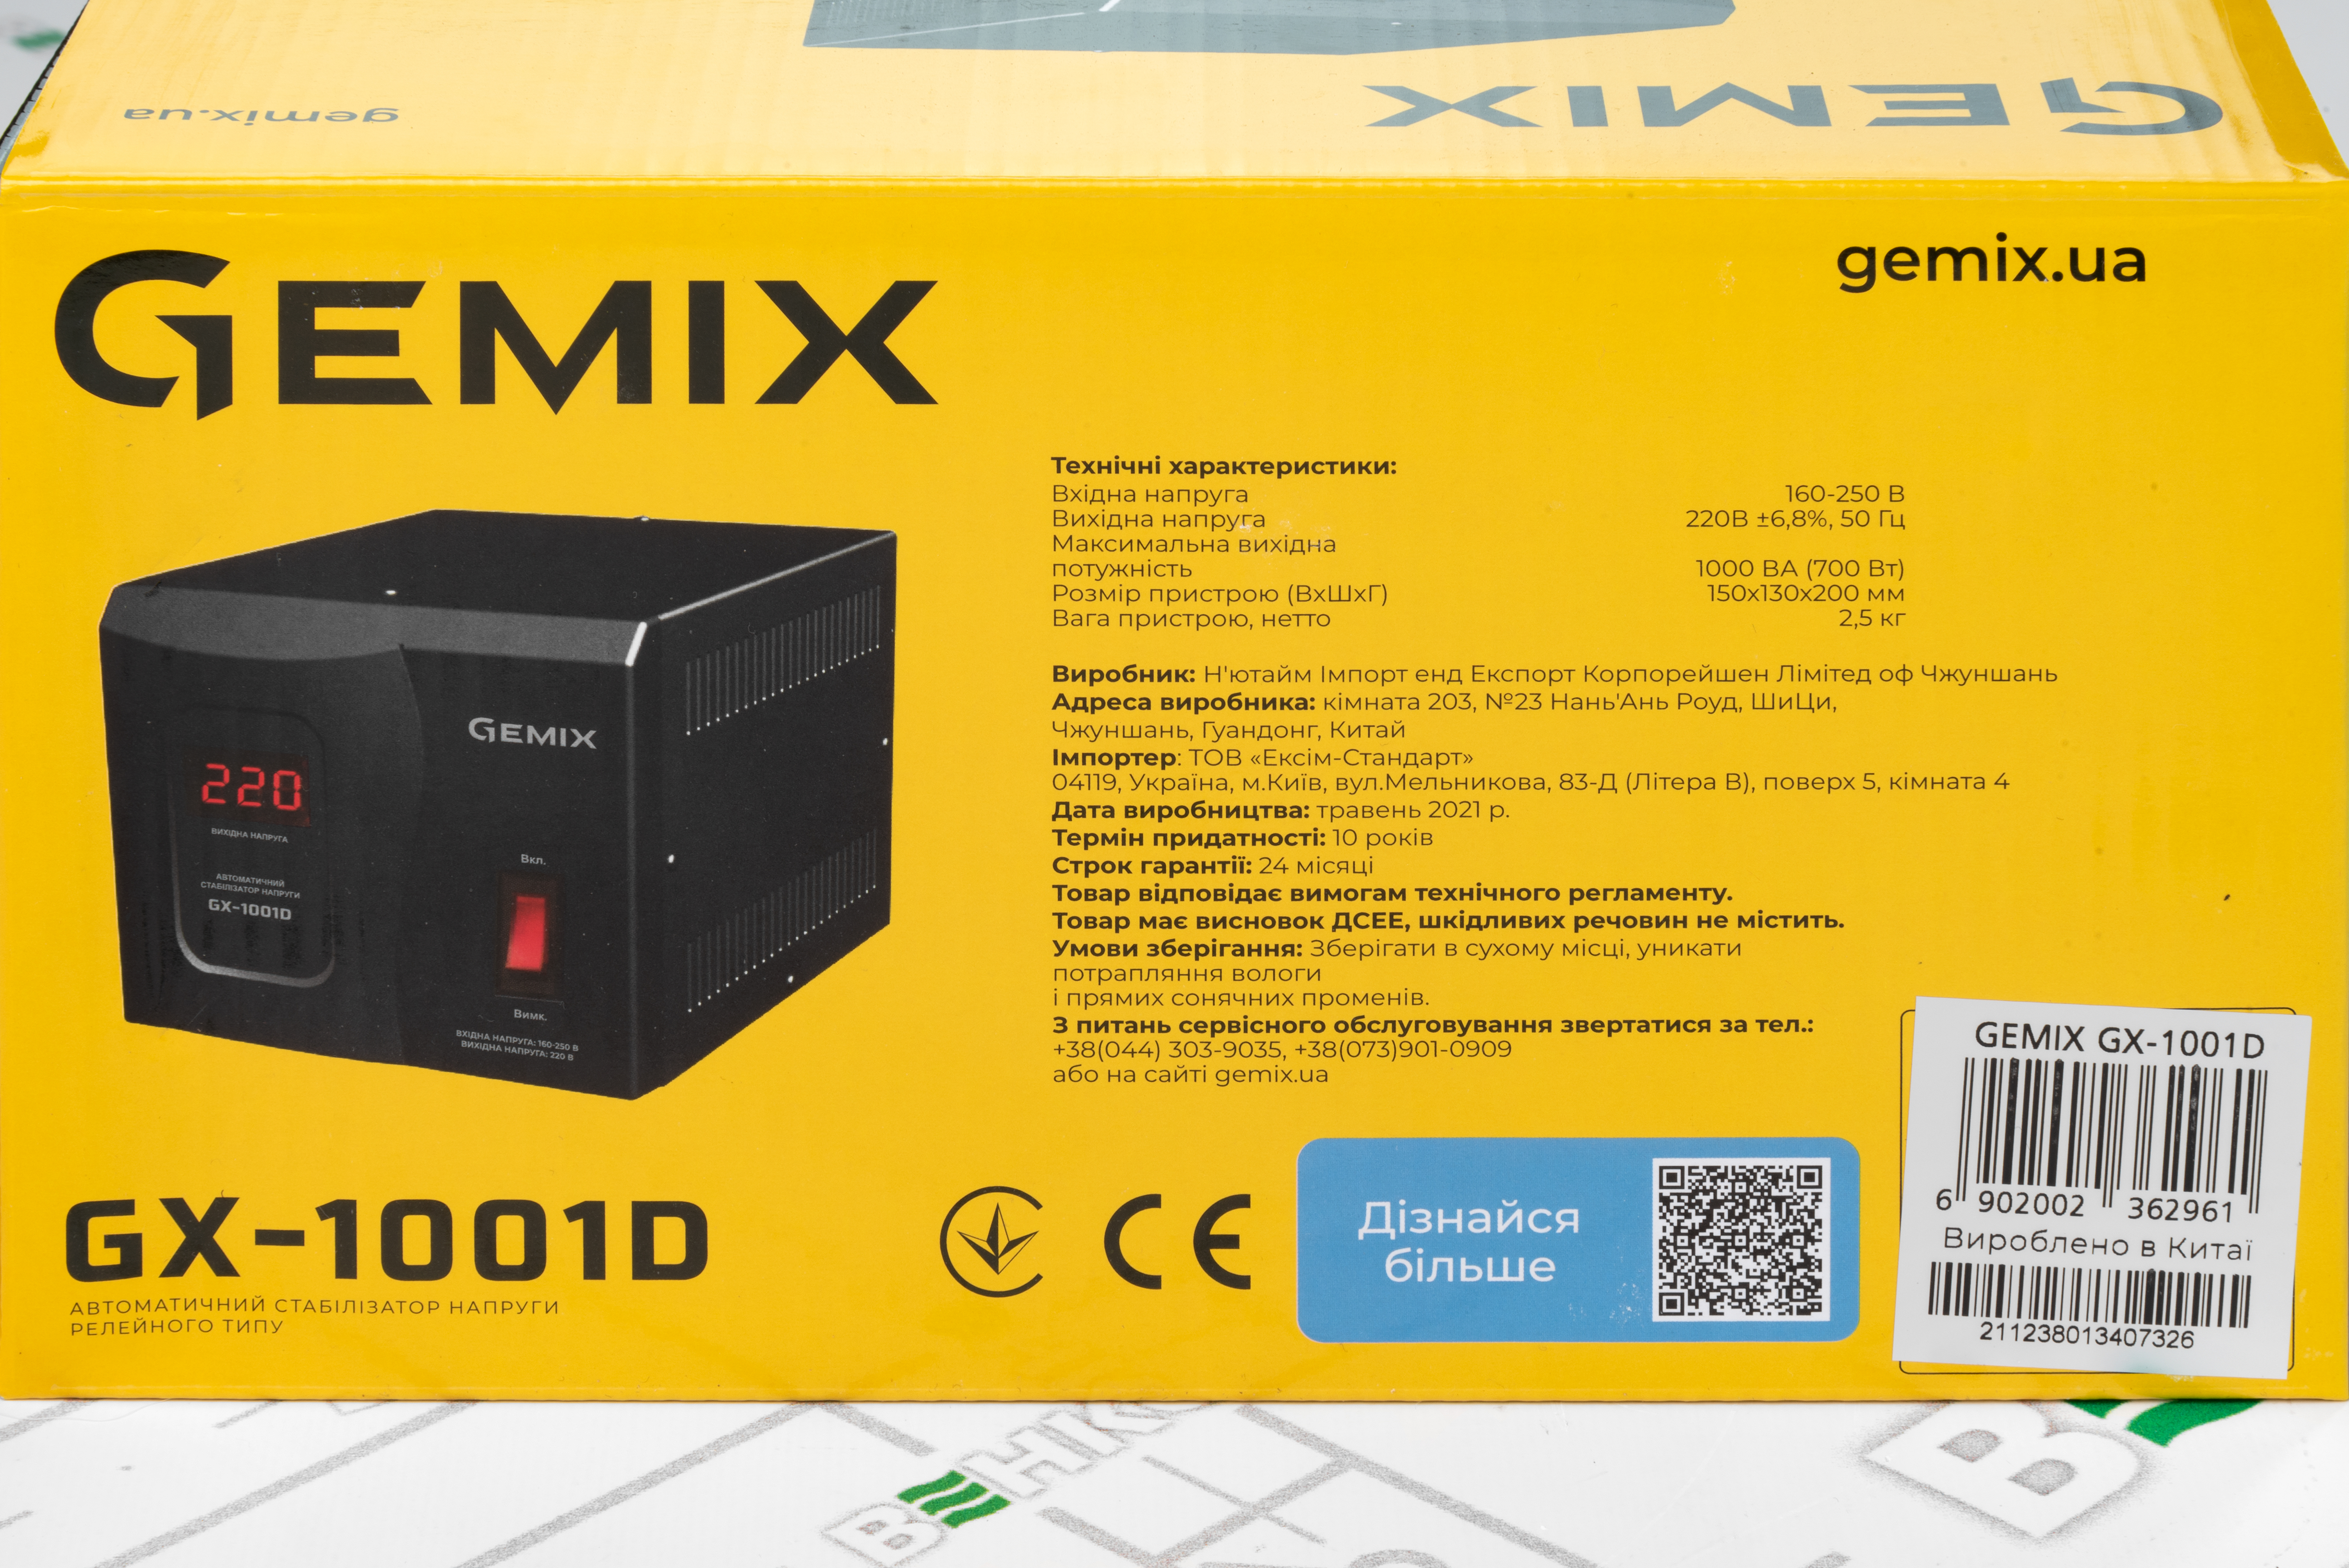 Gemix GX-1001D в магазине в Киеве - фото 10